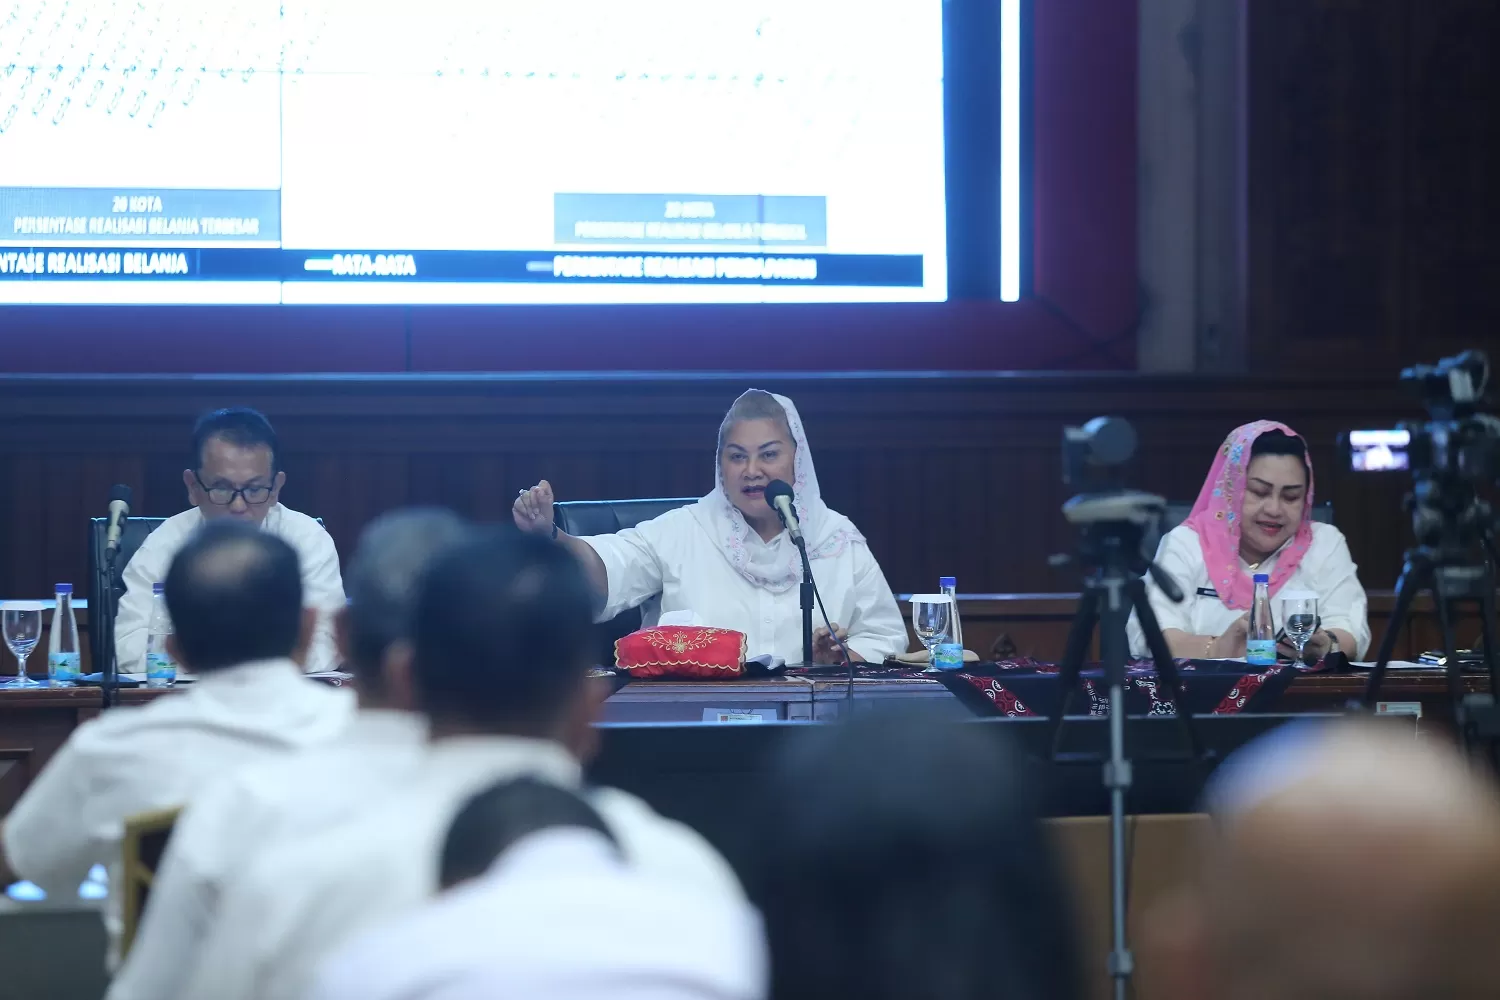  Plt Wali Kota Semarang, Hevearita Gunaryanti Rahayu saat rapat koordinasi di Balai Kota membahas tentang sampah di Tambaklorok, Rabu (25/1).  (SM/Hendra Setiawan)